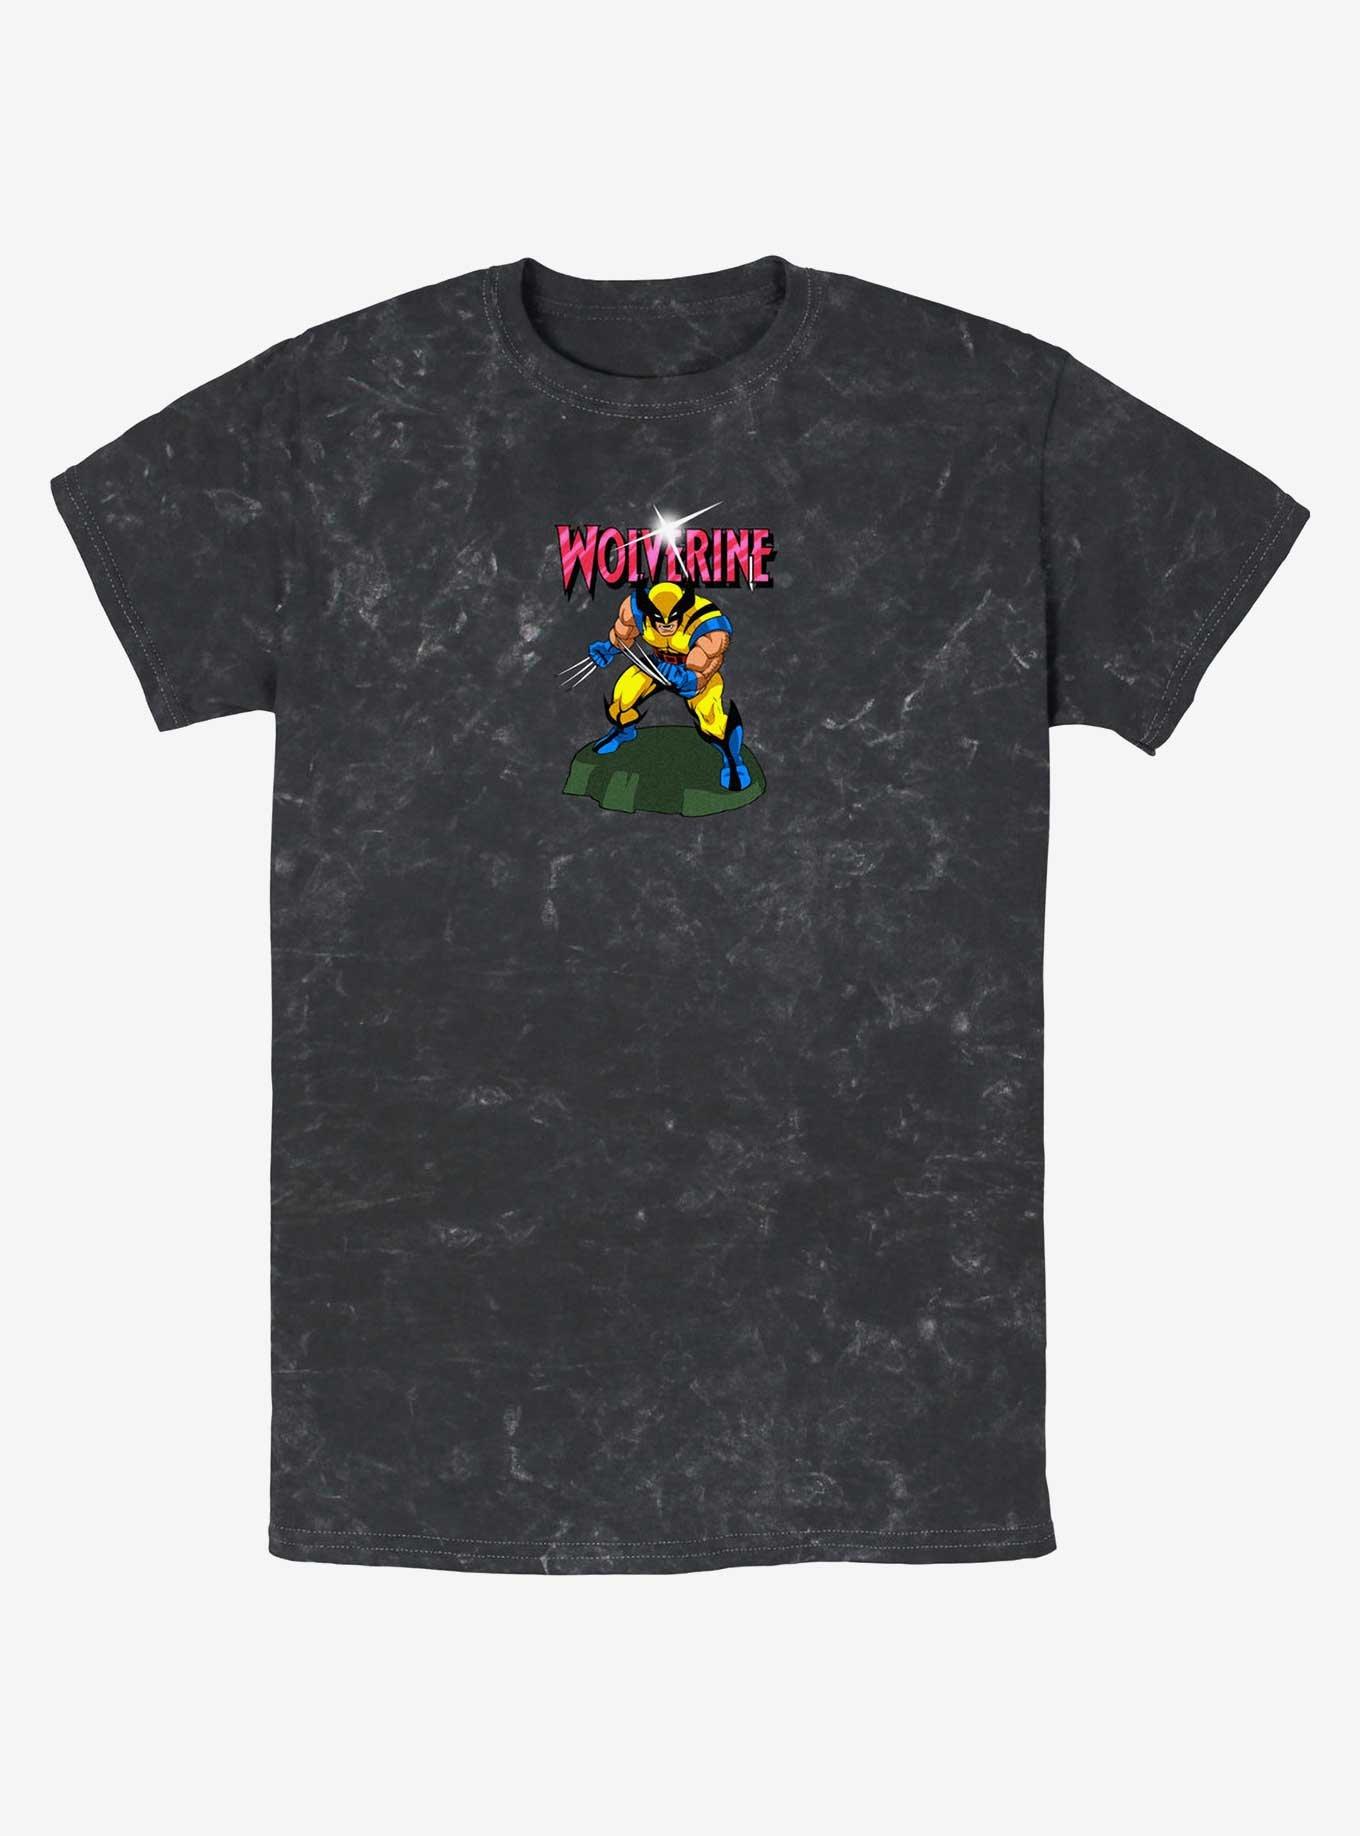 Wolverine Action Pose Mineral Wash T-Shirt, BLACK, hi-res